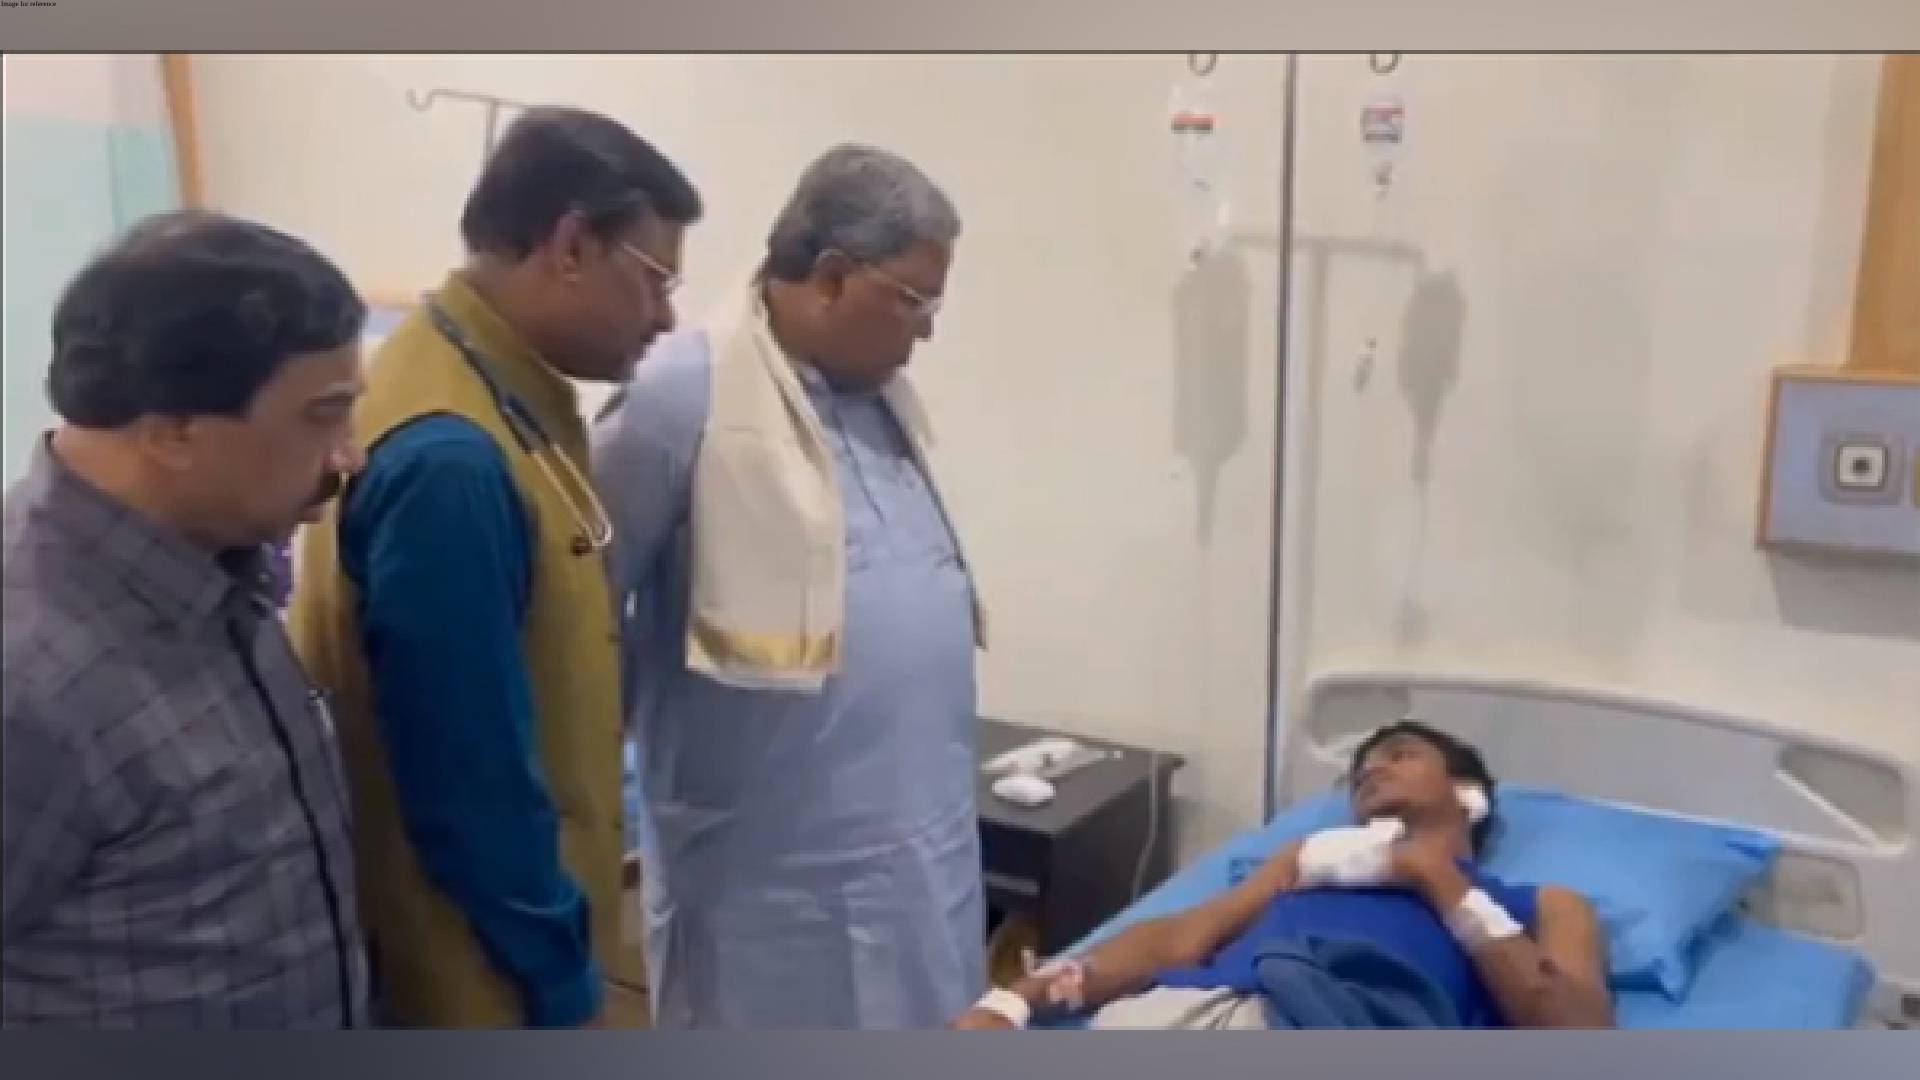 Karnataka CM Siddaramaiah visits Rameshwaram cafe blast victims in hospital